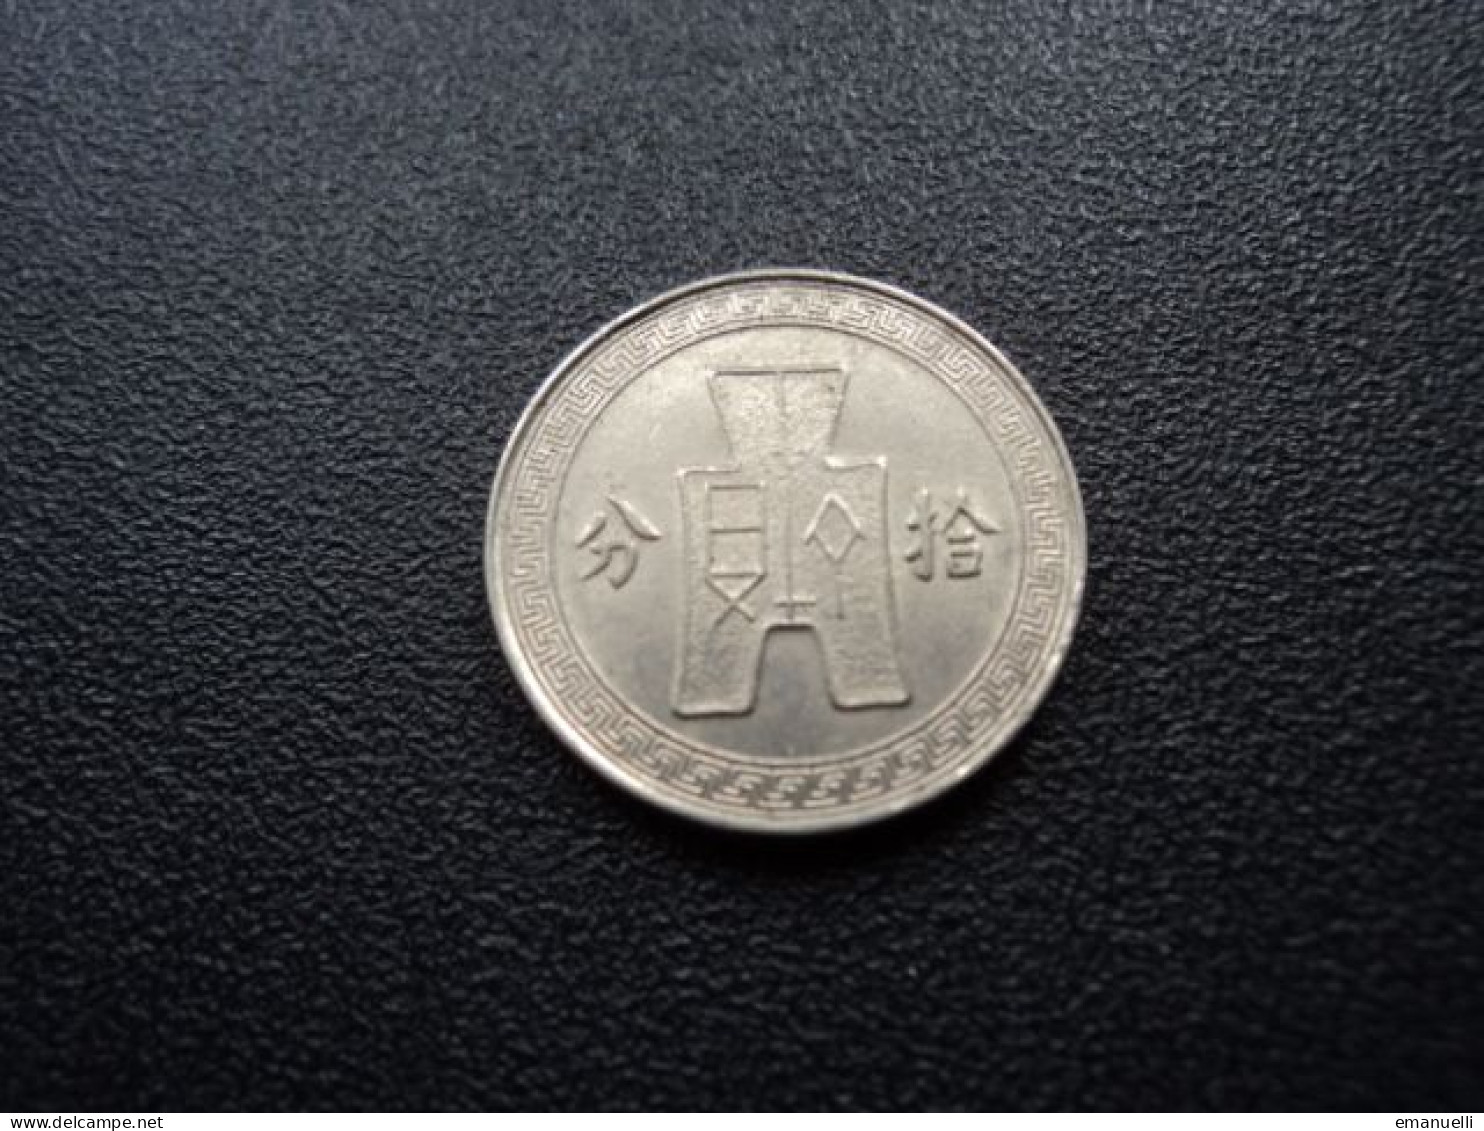 RÉPUBLIQUE DE CHINE : 10 CENTS = 1 CHIAO    An 25 (1936)  (KM) Y 349 **     SUP - China